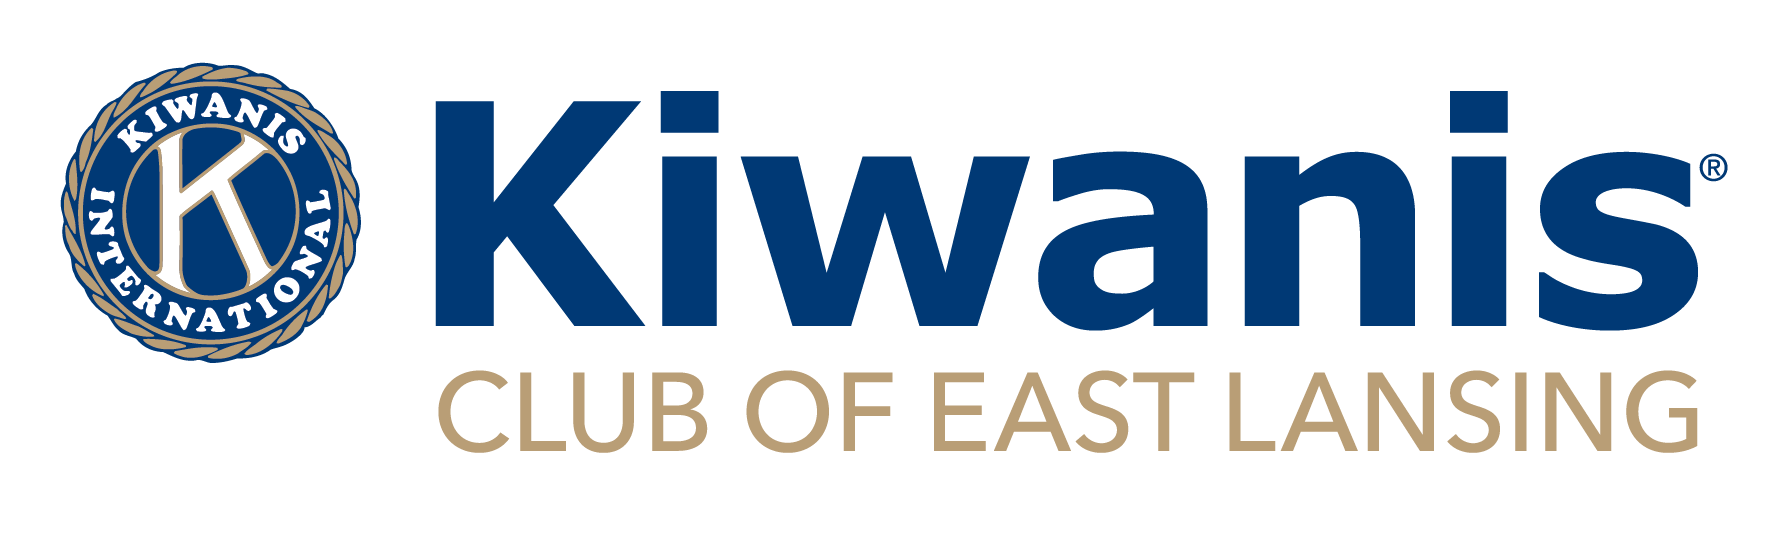 KI_Club-of-East-Lansing_BLUEGOLD